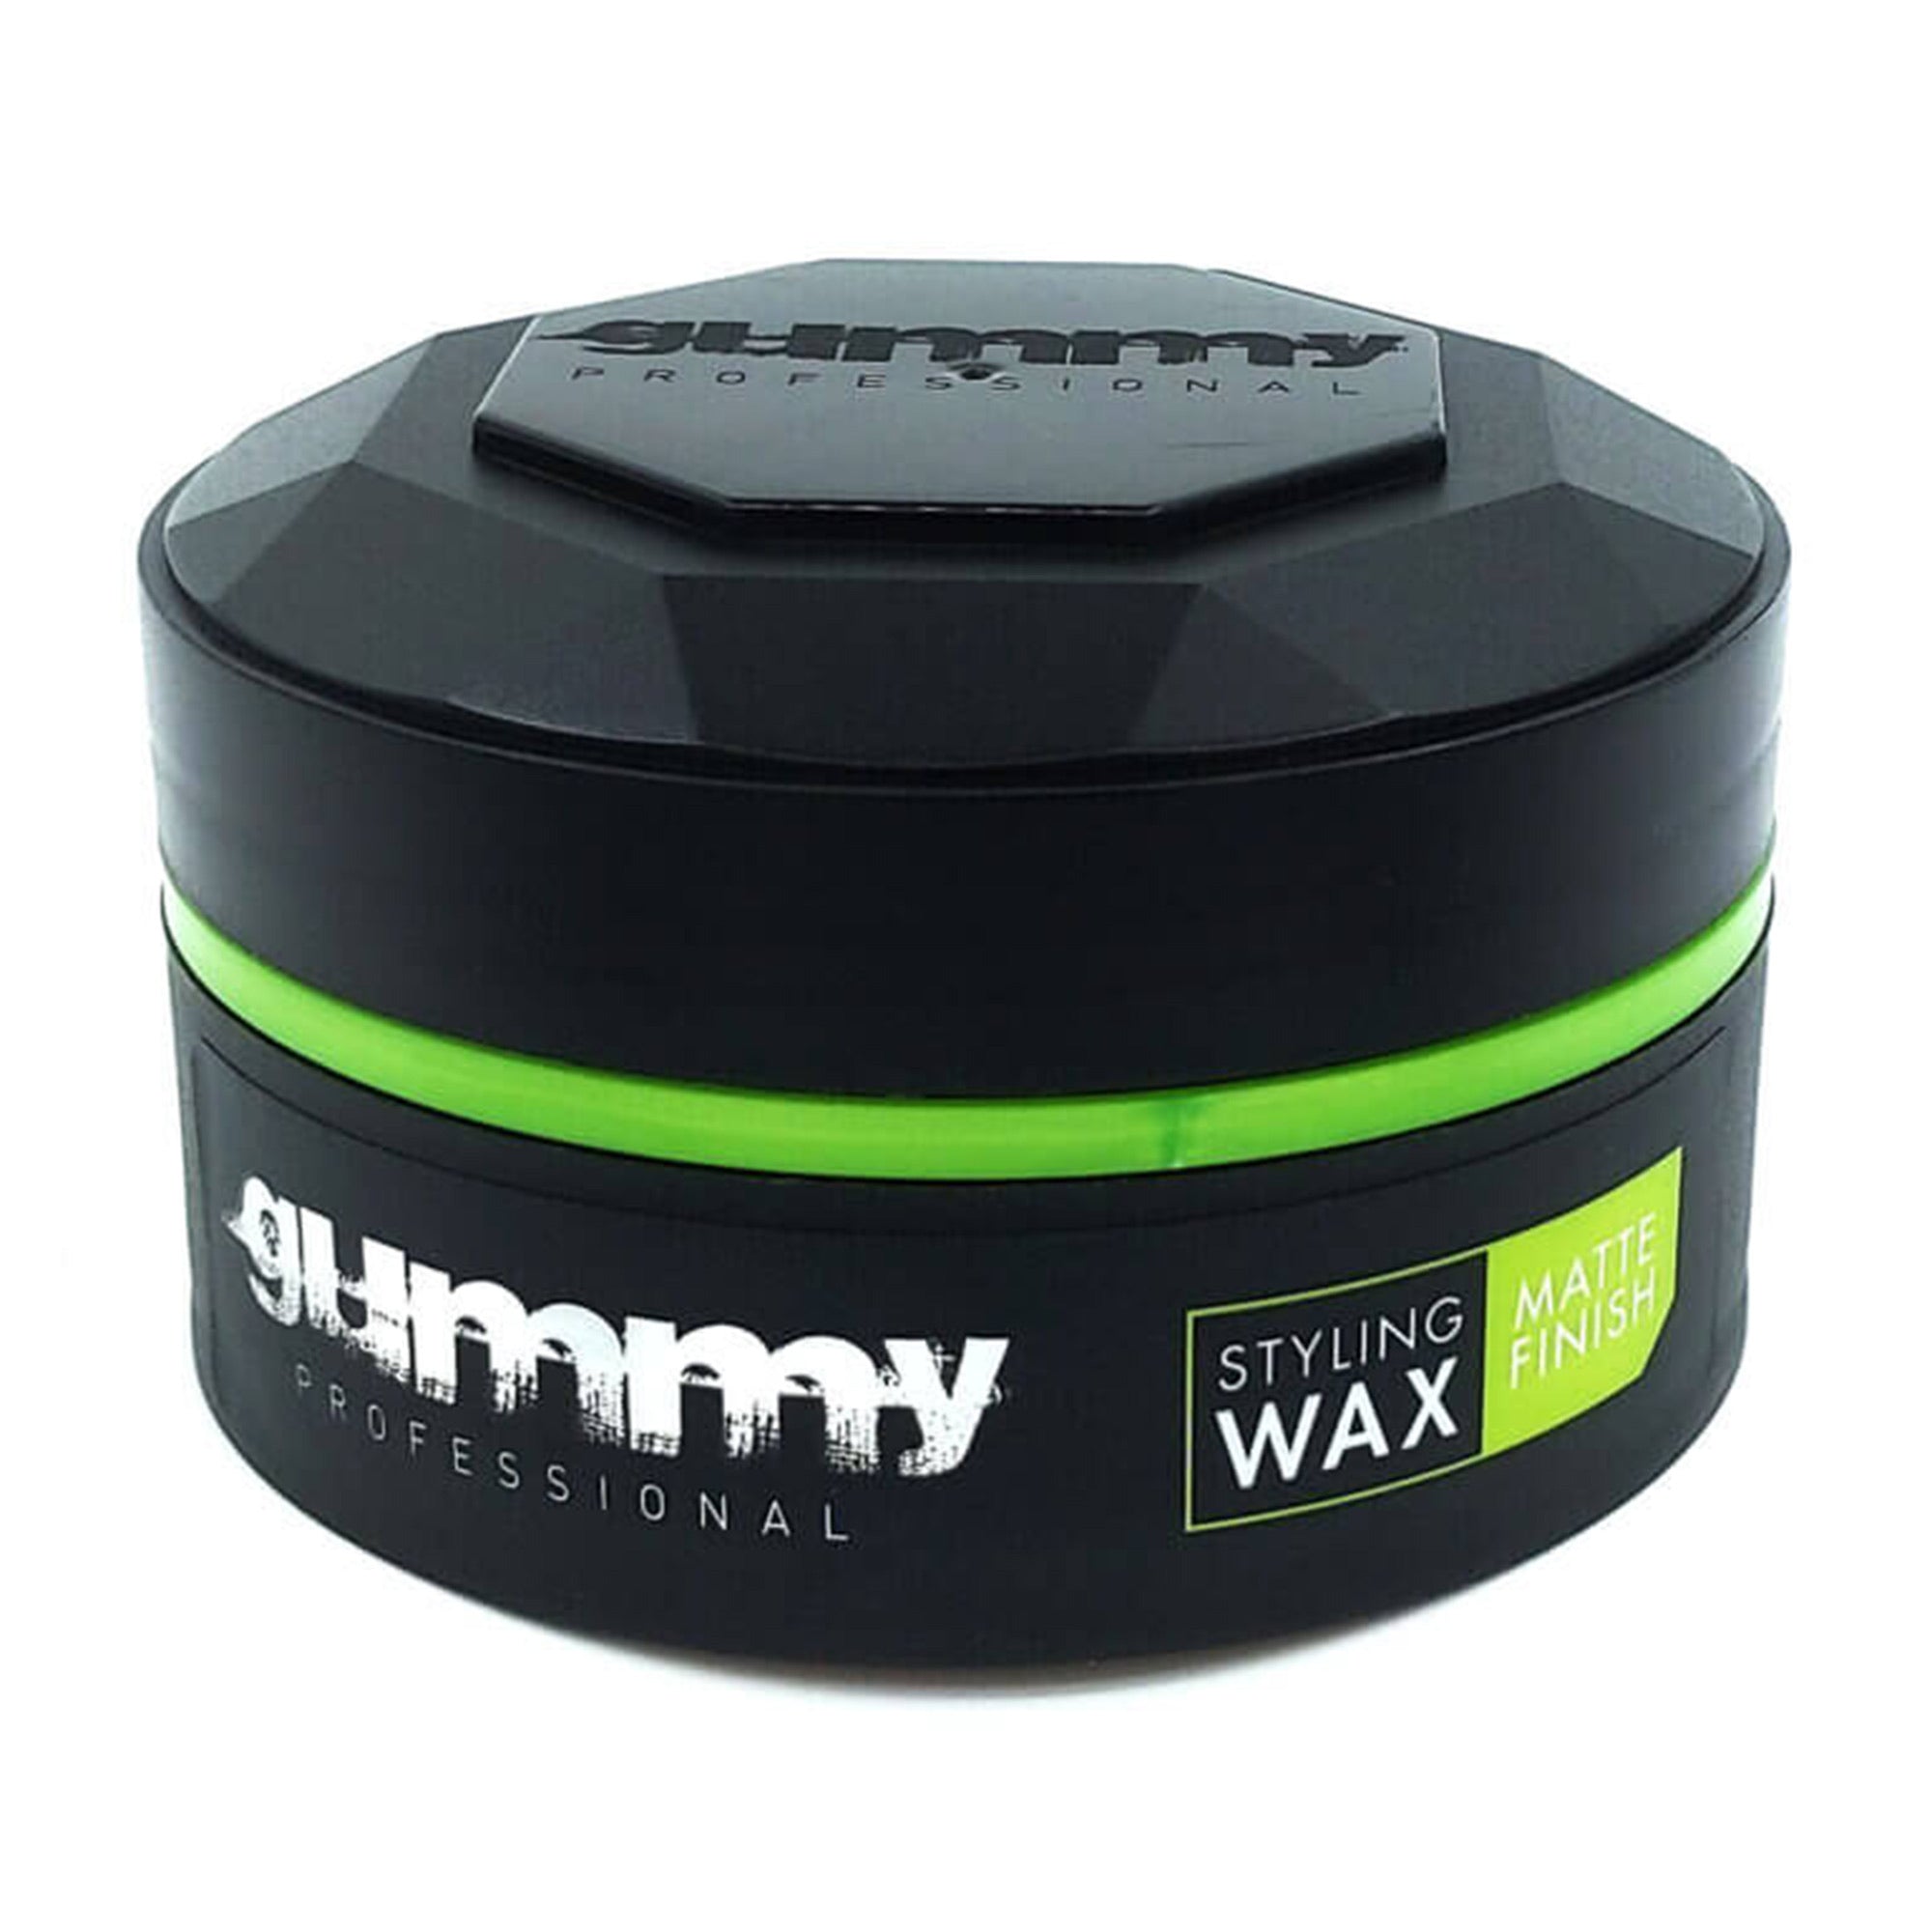 Gummy - Styling Wax Matte Finish 150ml